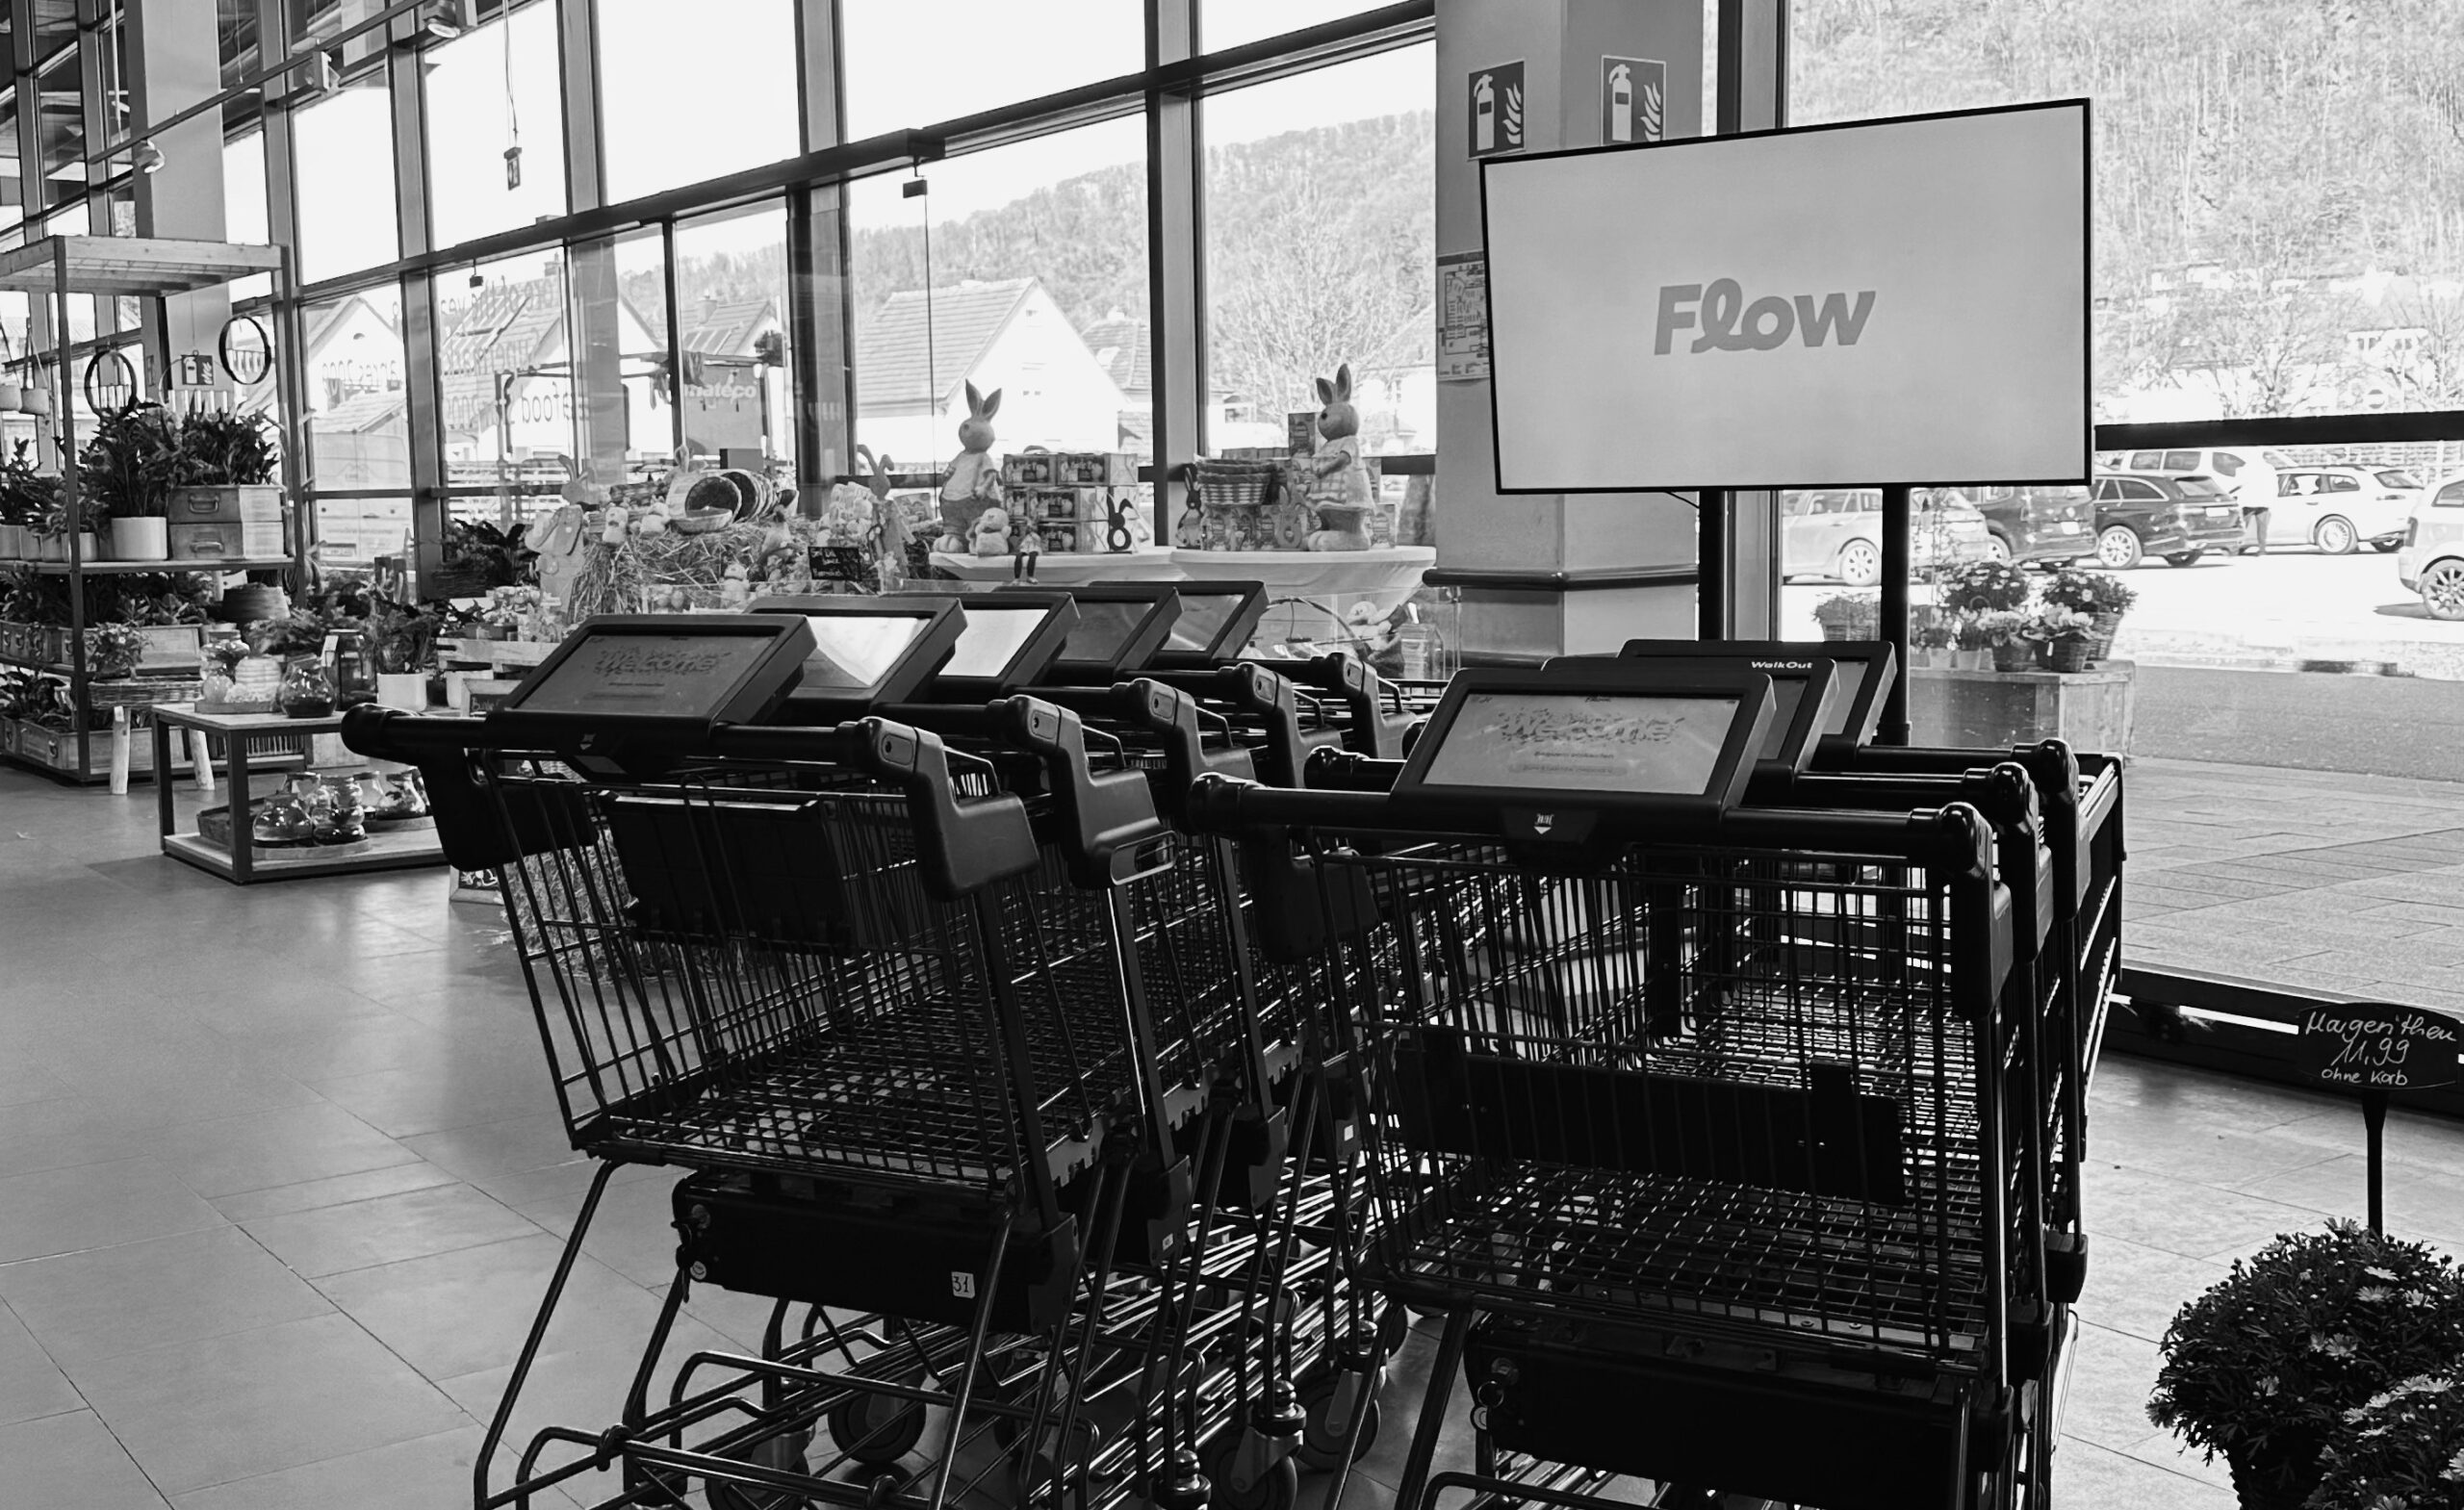 smart shopping cart technology